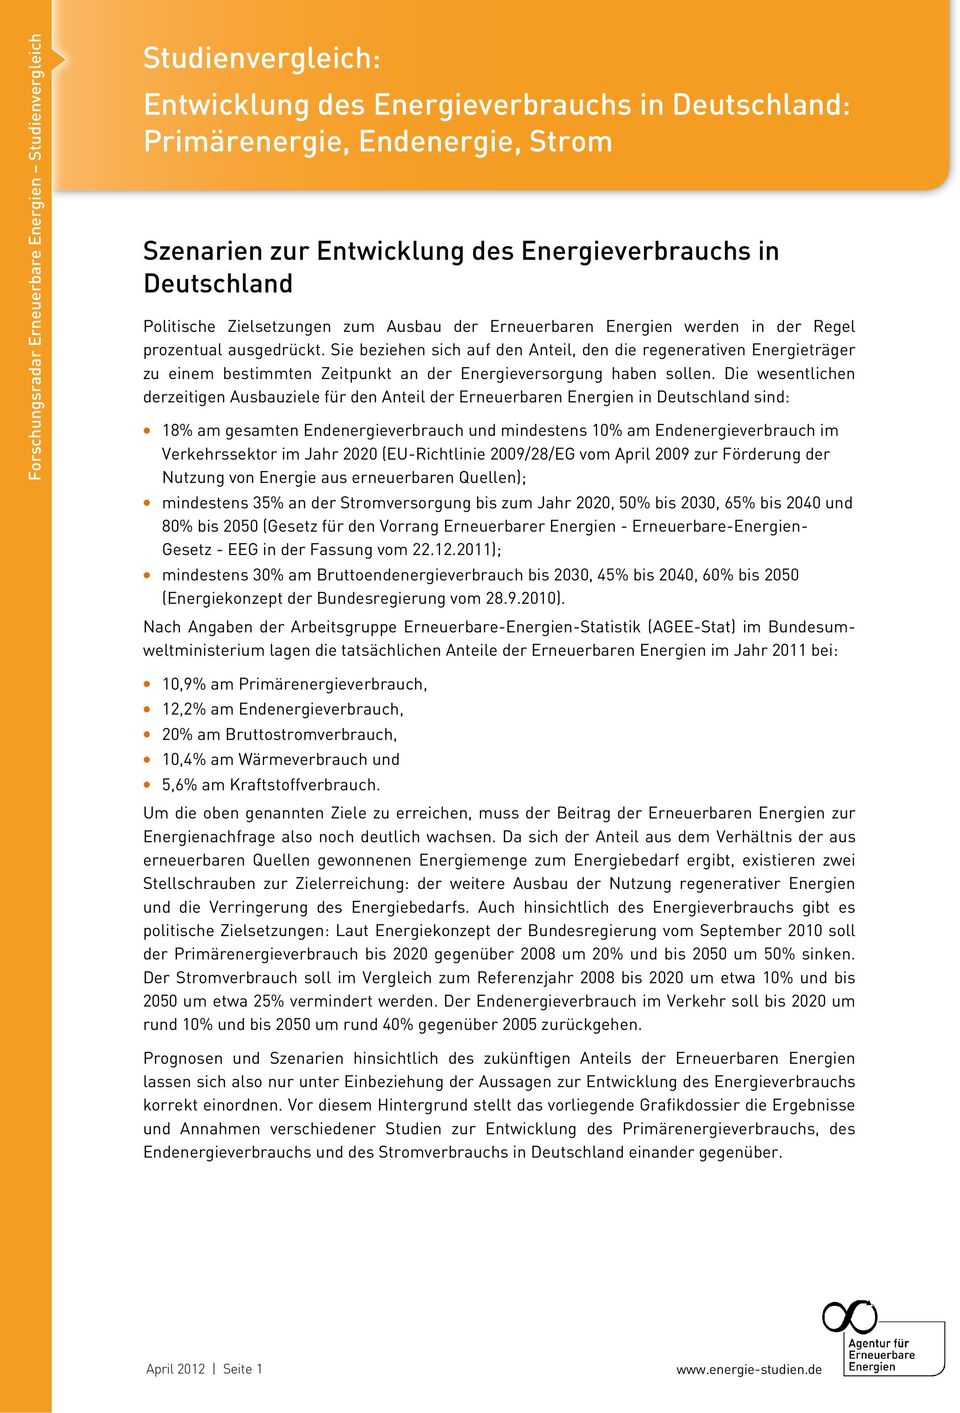 Die wesentlichen derzeitigen Ausbauziele für den Anteil der Erneuerbaren Energien in Deutschland sind: 18% am gesamten Endenergieverbrauch und mindestens 10% am Endenergieverbrauch im Verkehrssektor